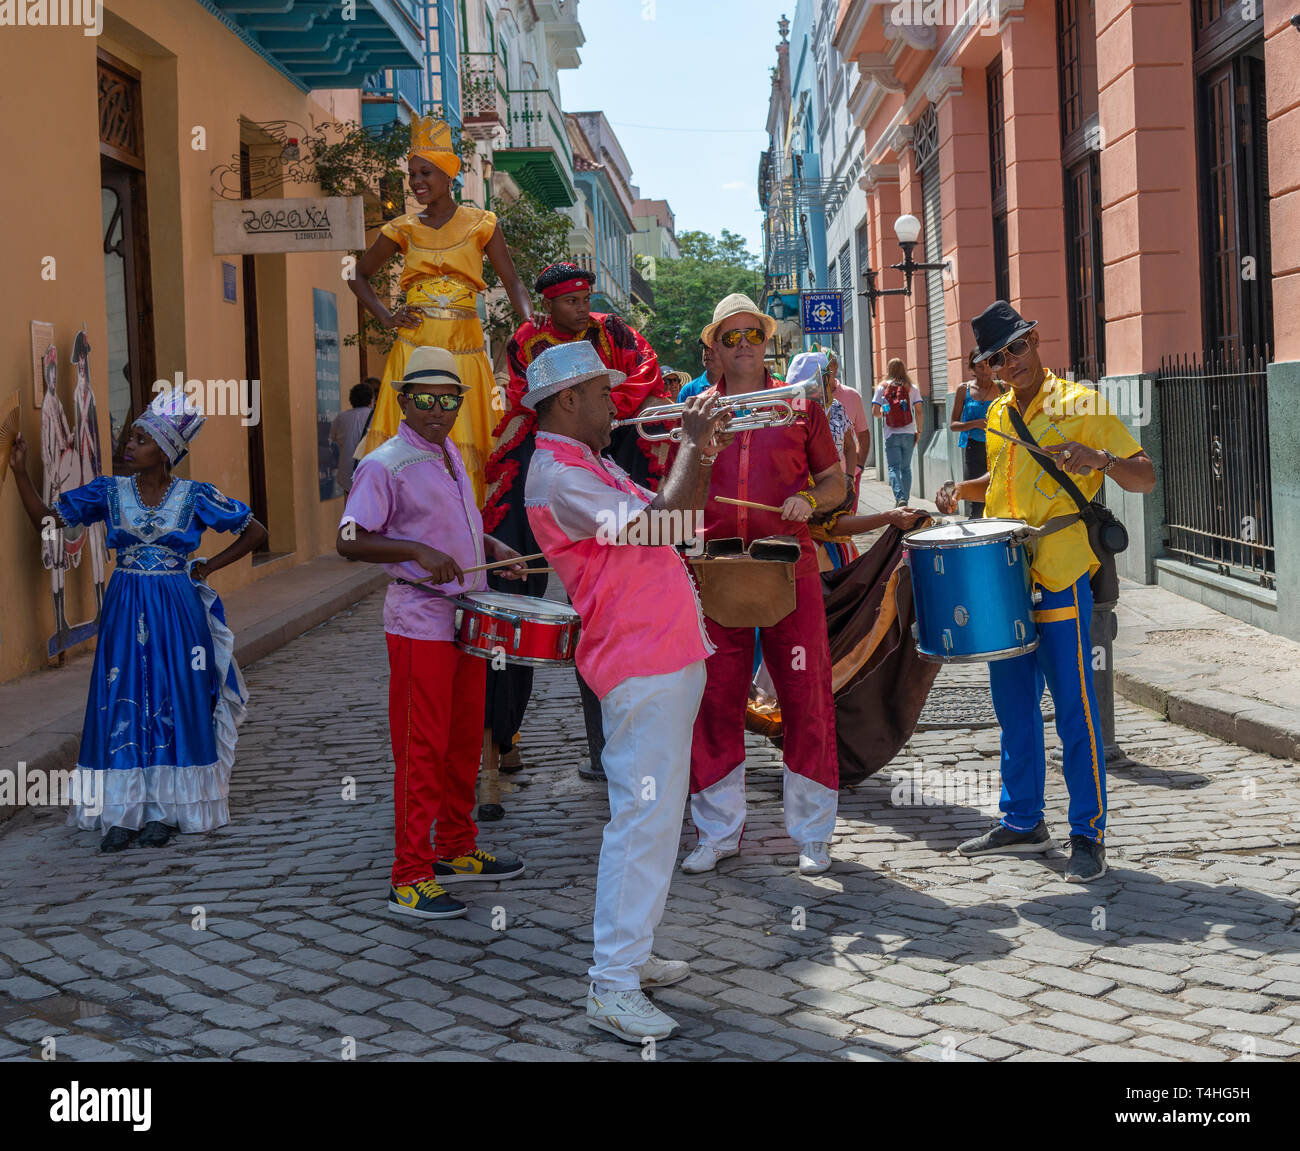 Farbenfroh gekleideten Musiker in der Band spielen in einer der Gassen in der Altstadt oder Habana Vieja, Havanna, Kuba Stockfoto